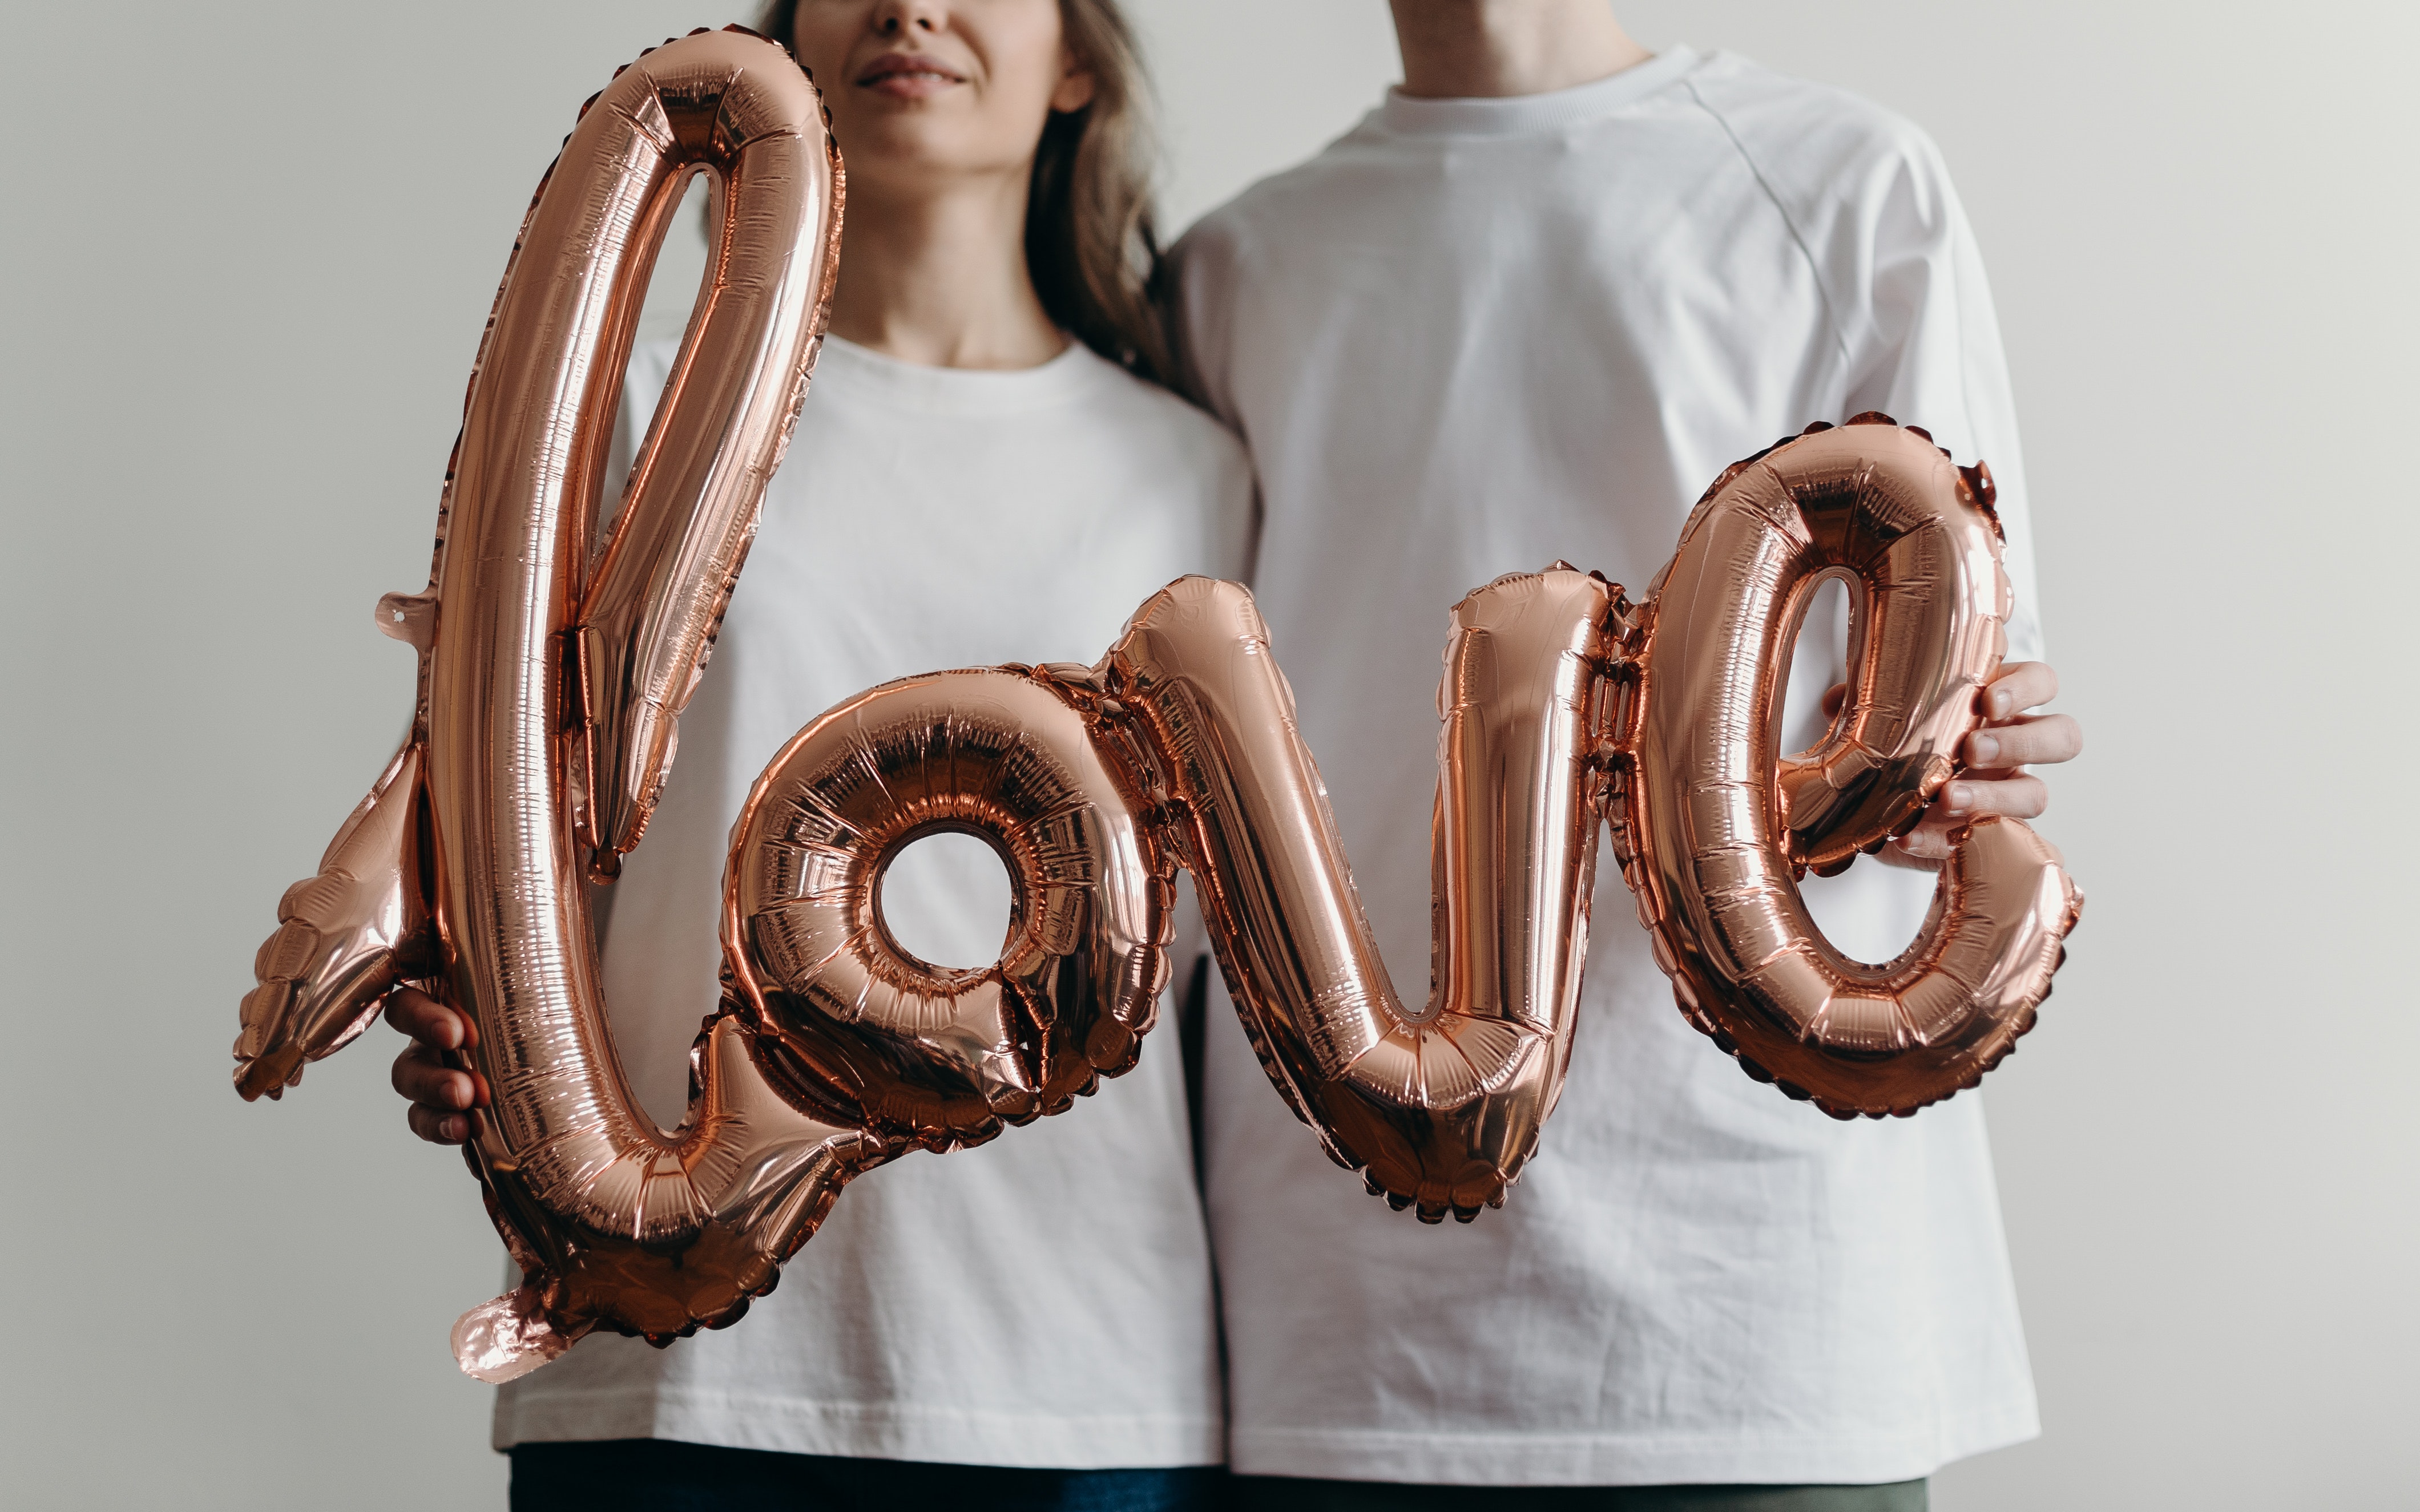 La ciencia sigue descubriendo las ventajas de estar enamorados.  (Foto Prensa Libre: cottonbro en Pexels).